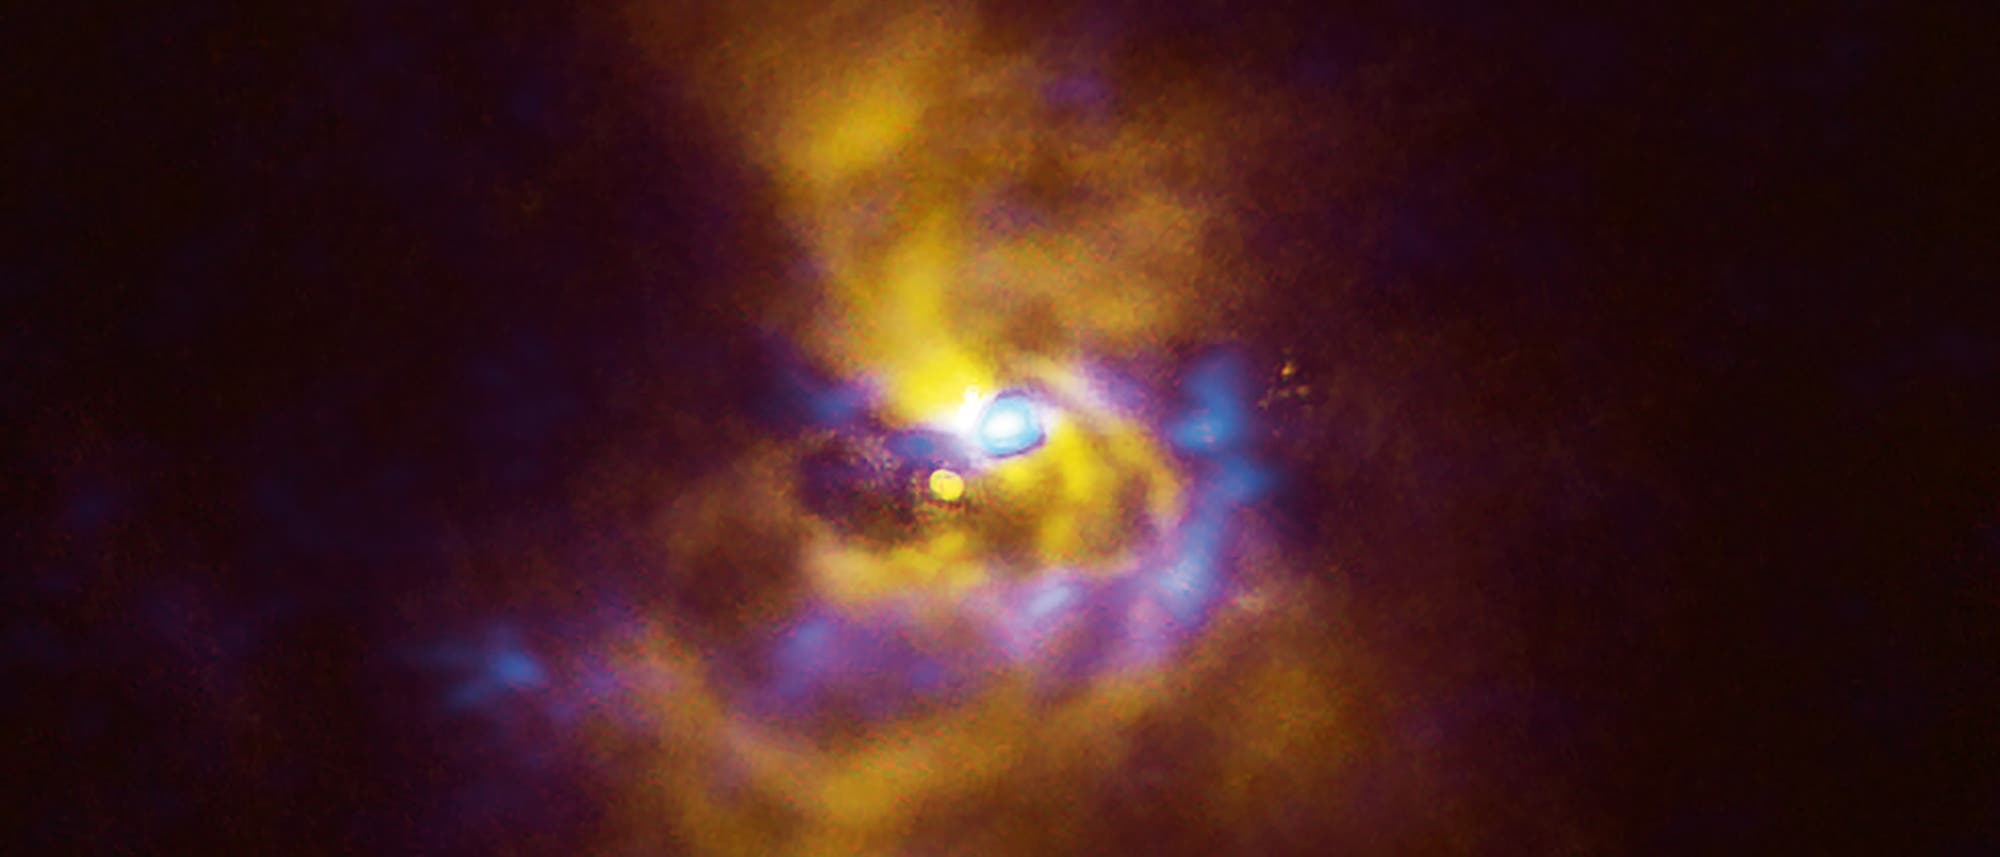 Spiralarme, V960 Monocerotis, Gasplaneten 